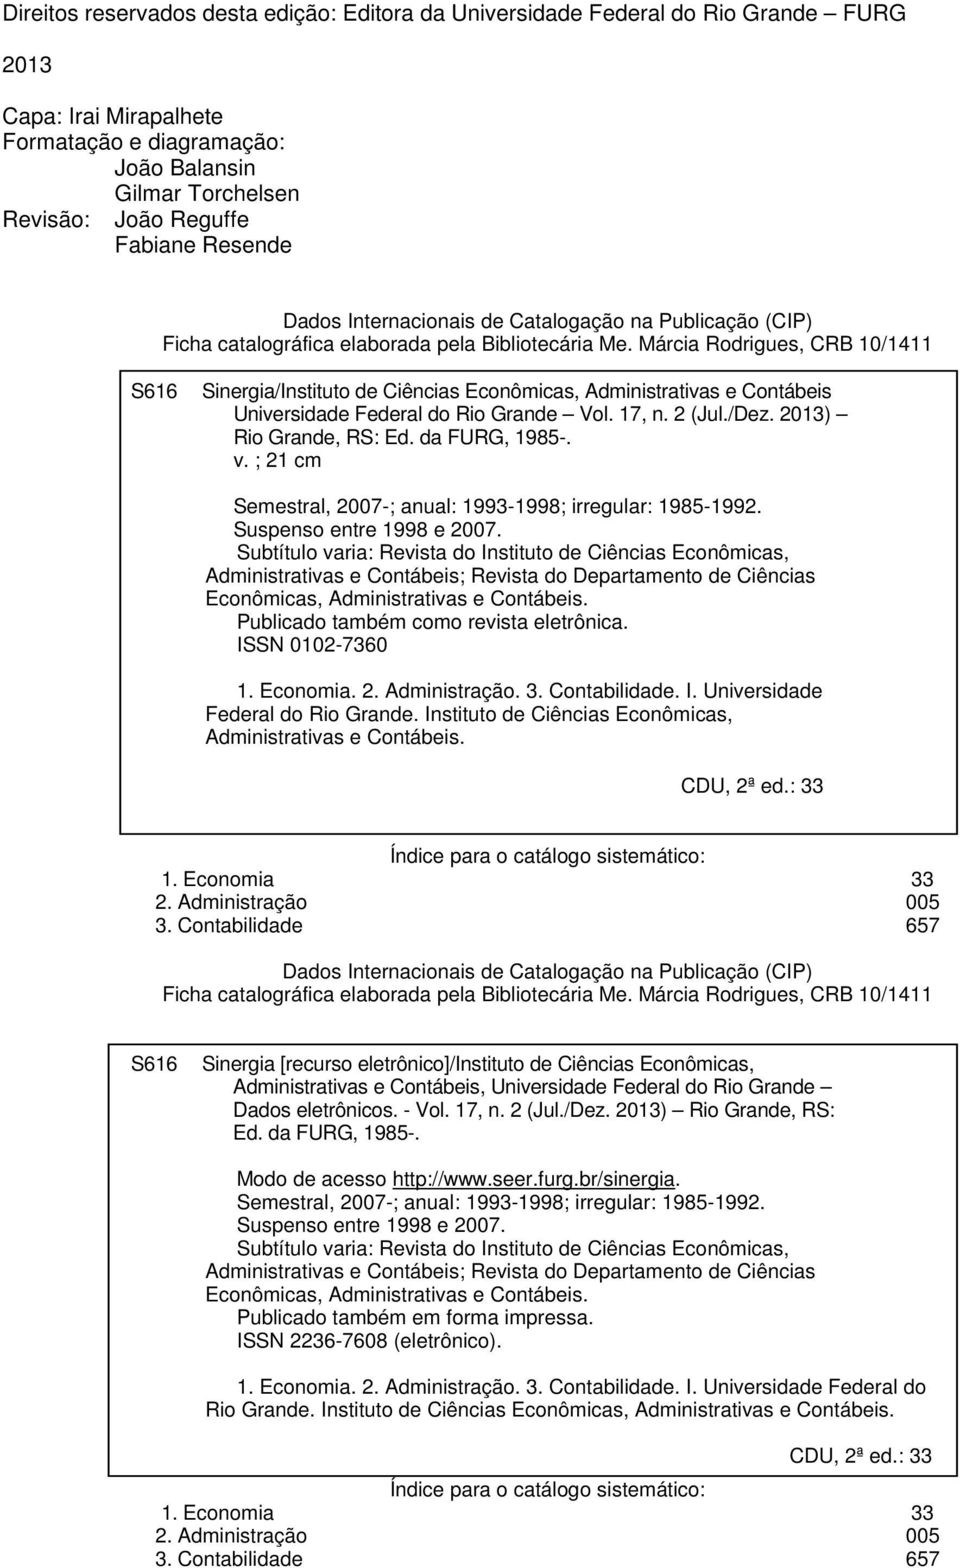 Márcia Rodrigues, CRB 10/1411 S616 Sinergia/Instituto de Ciências Econômicas, Administrativas e Contábeis Universidade Federal do Rio Grande Vol. 17, n. 2 (Jul./Dez. 2013) Rio Grande, RS: Ed.